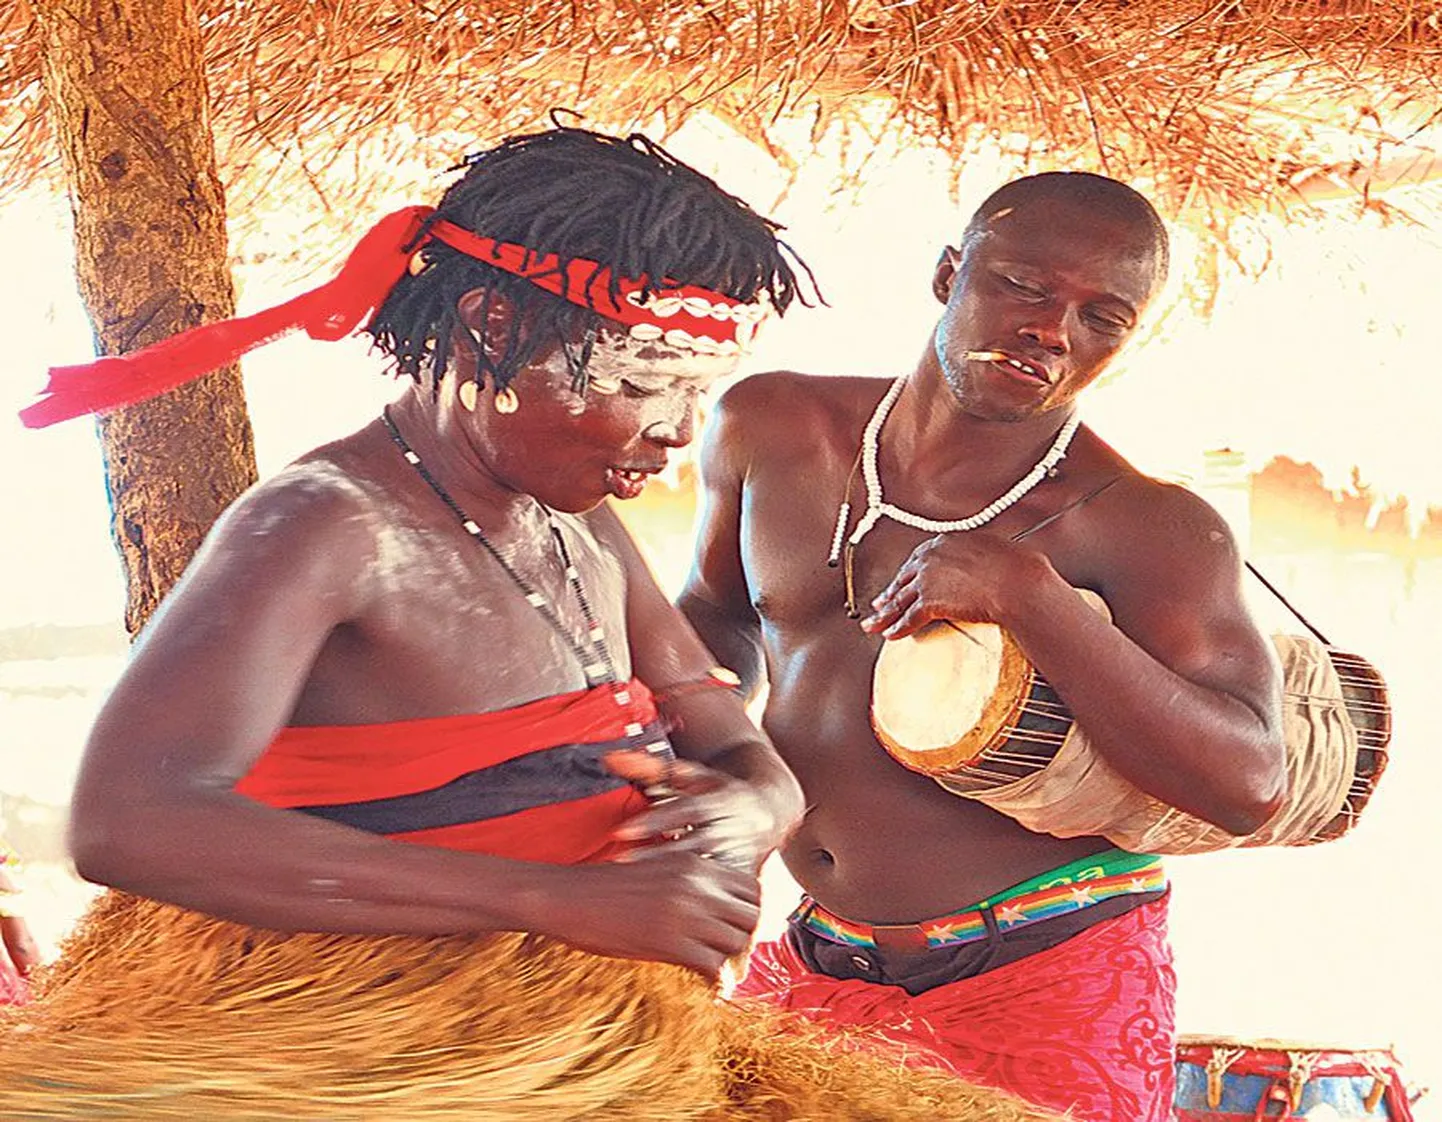 Ghana voodoo-rituaal: seni näib kõik kena, aga peagi väljub olukord kontrolli alt.